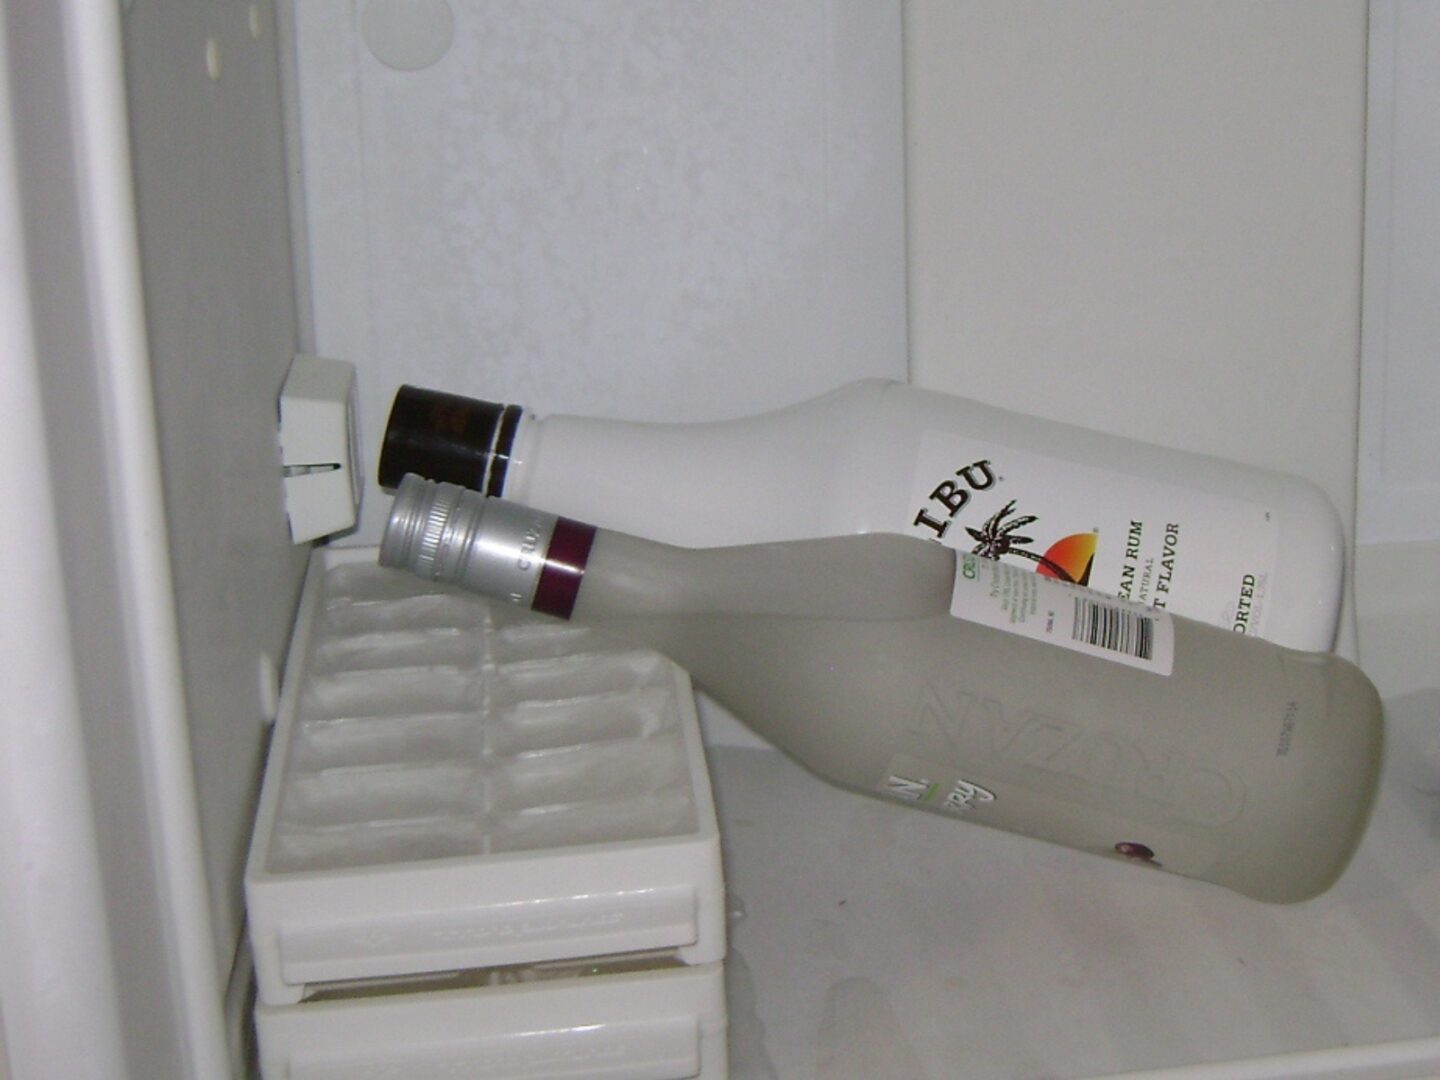 malibu rum bottle in the fridge